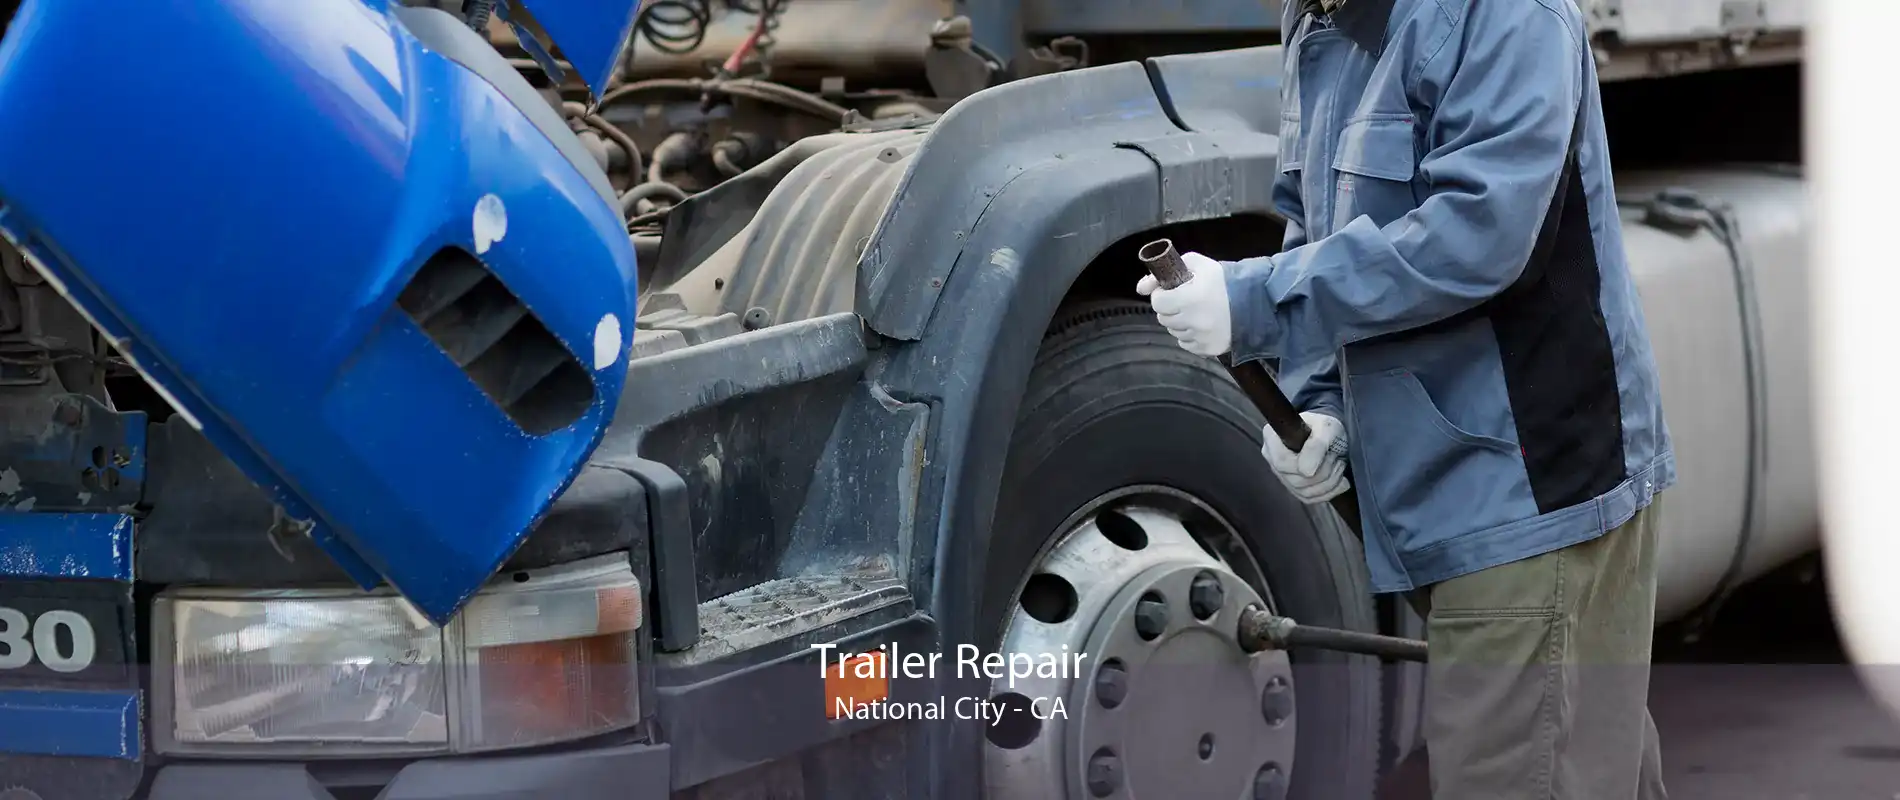 Trailer Repair National City - CA